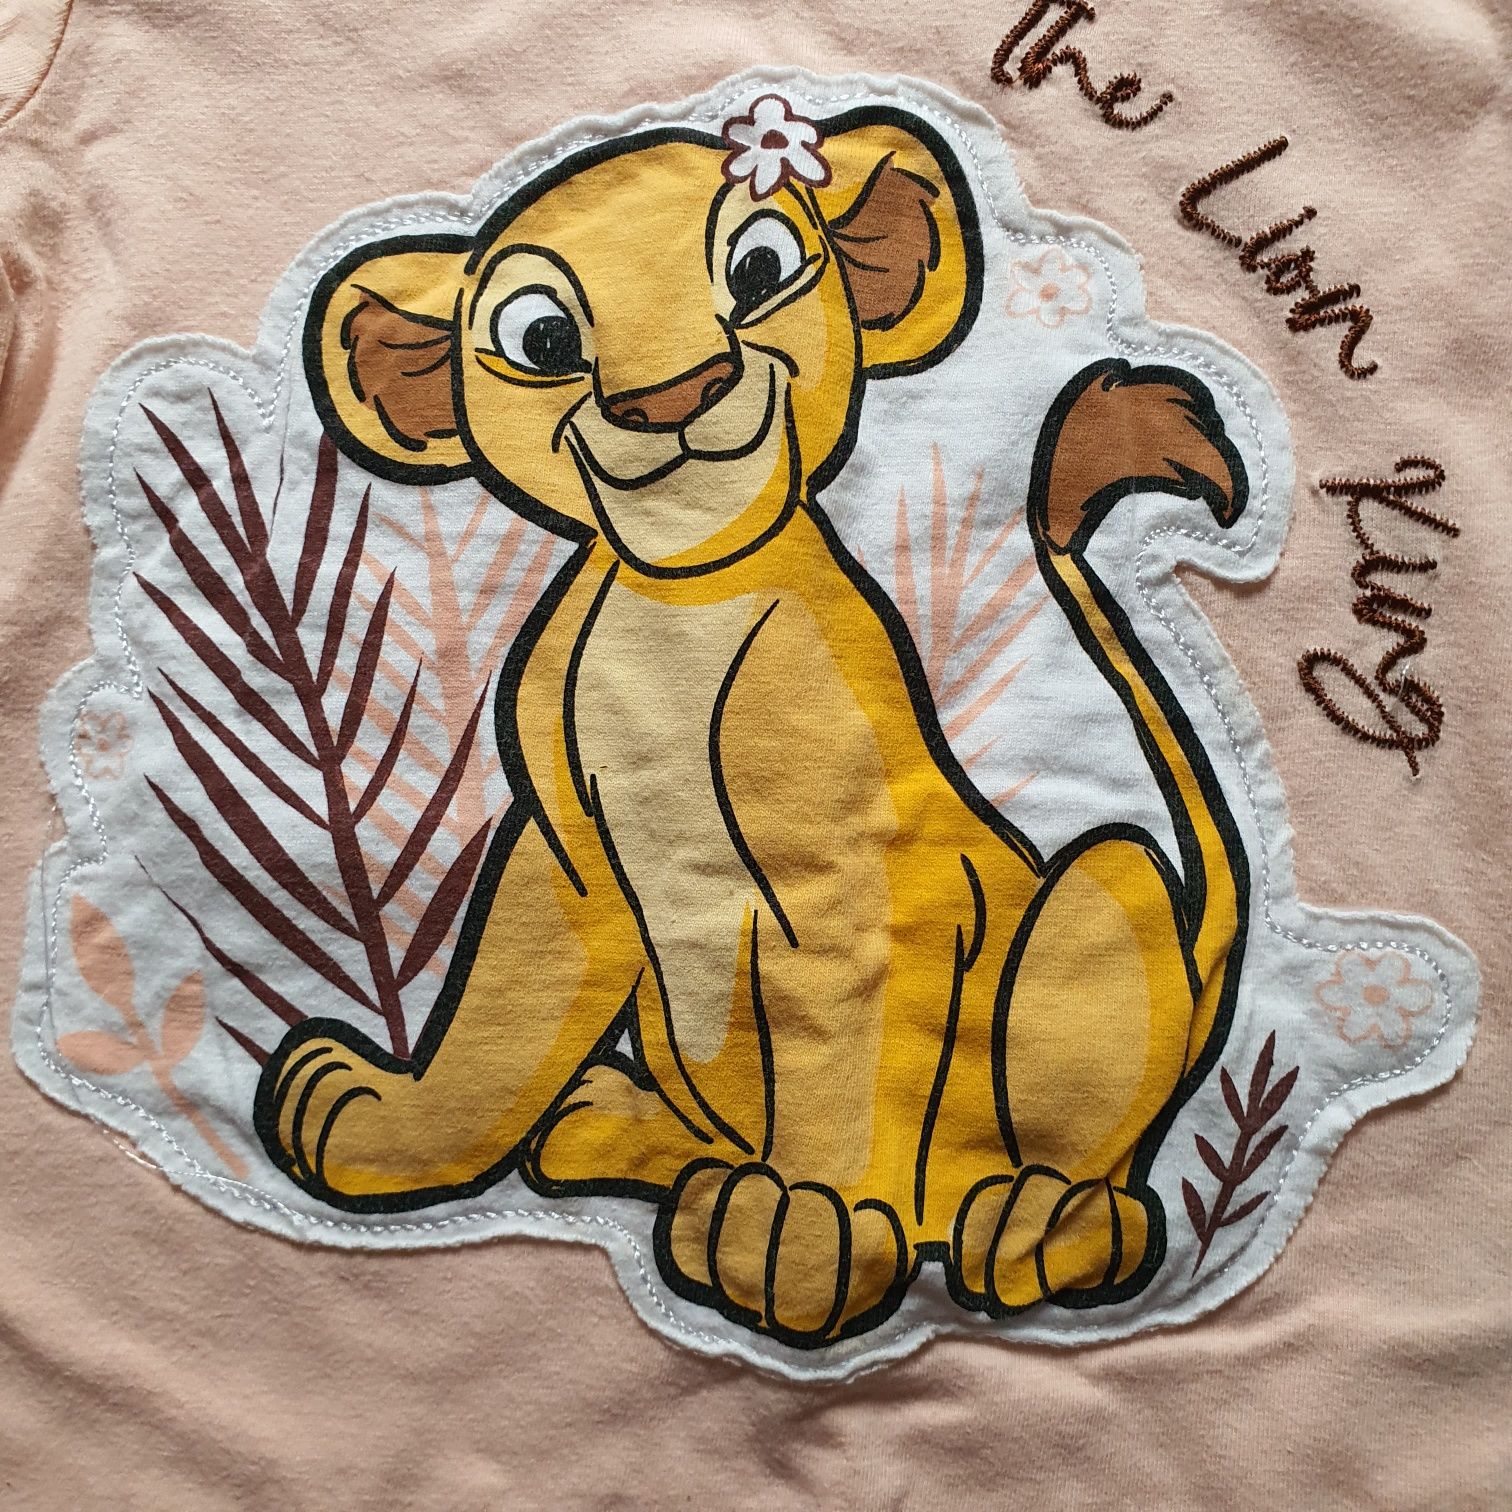 Bluza cu desen Lion King